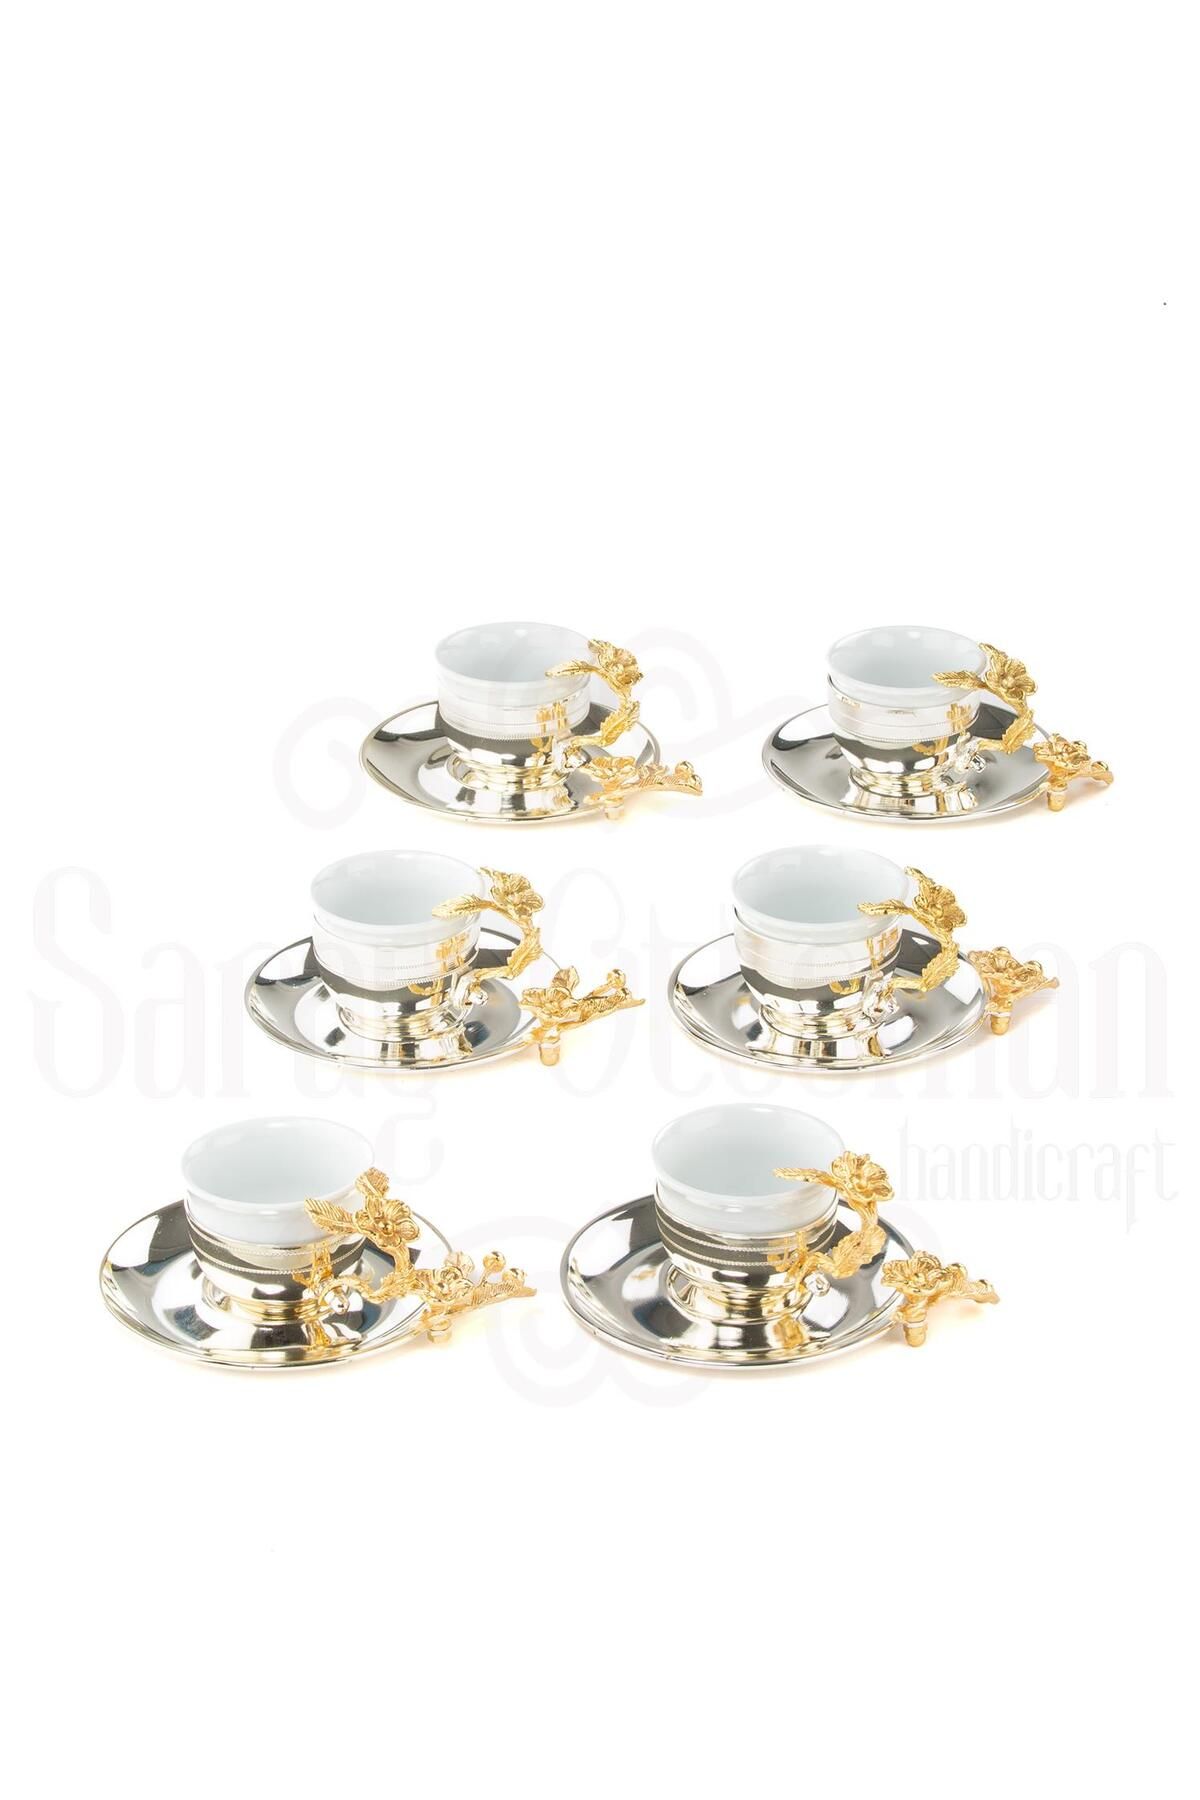 Saray Ottoman Bakır Kahve Fincanı Porselen Kahve Fincanı Altın Japon Gülü Çizgili 6'lı Kahve Fincanı Nikel